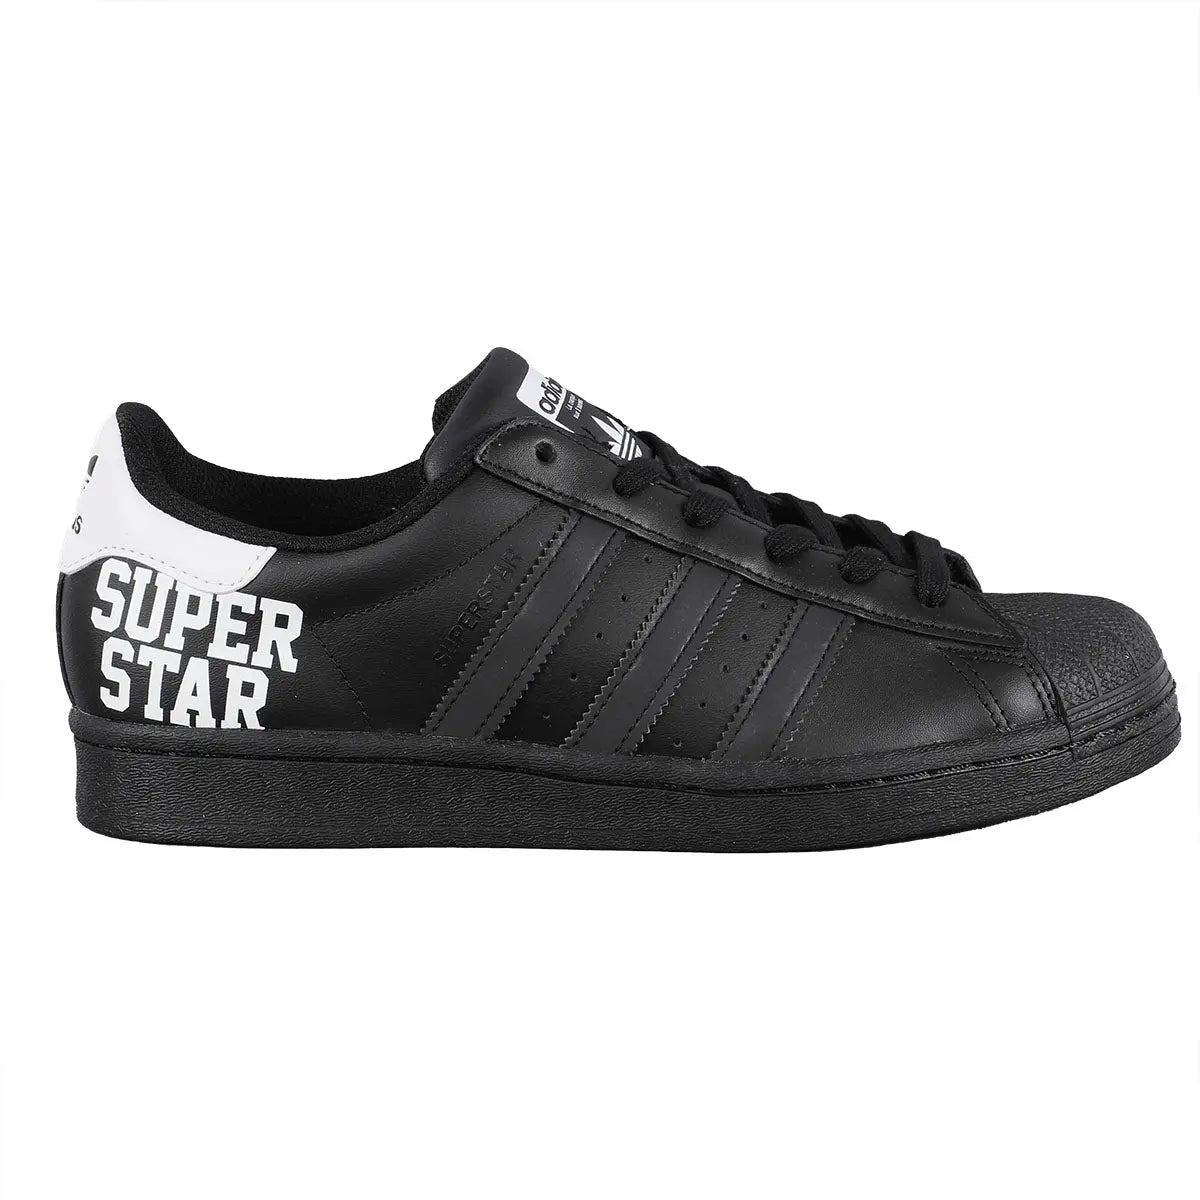 Women's shoes adidas Superstar W Core Black/ Ftw White/ Core Black